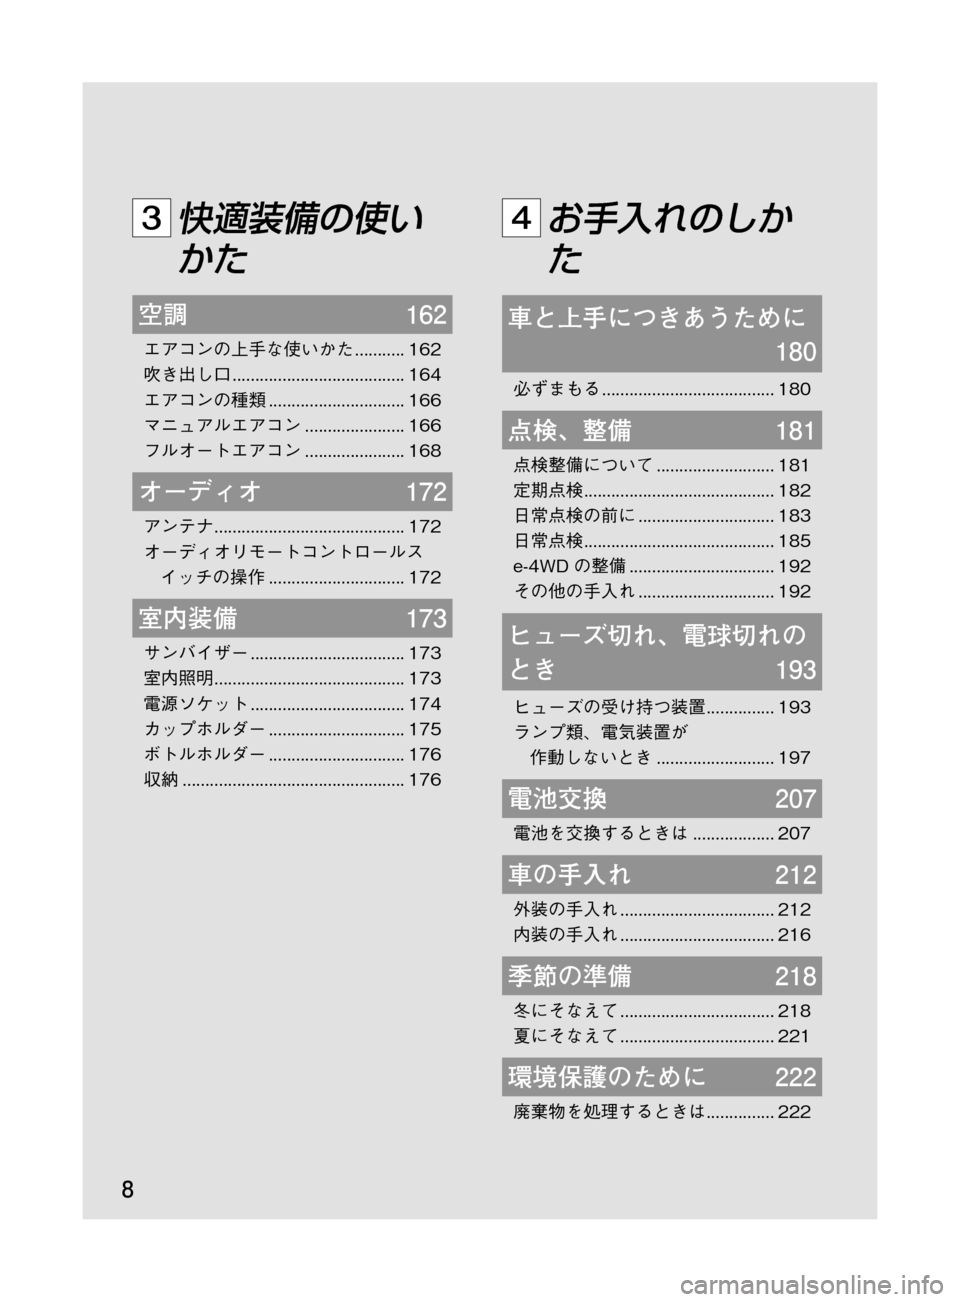 MAZDA MODEL DEMIO 2011  デミオ｜取扱説明書 (in Japanese) �
��P�S�N��/�P���% 